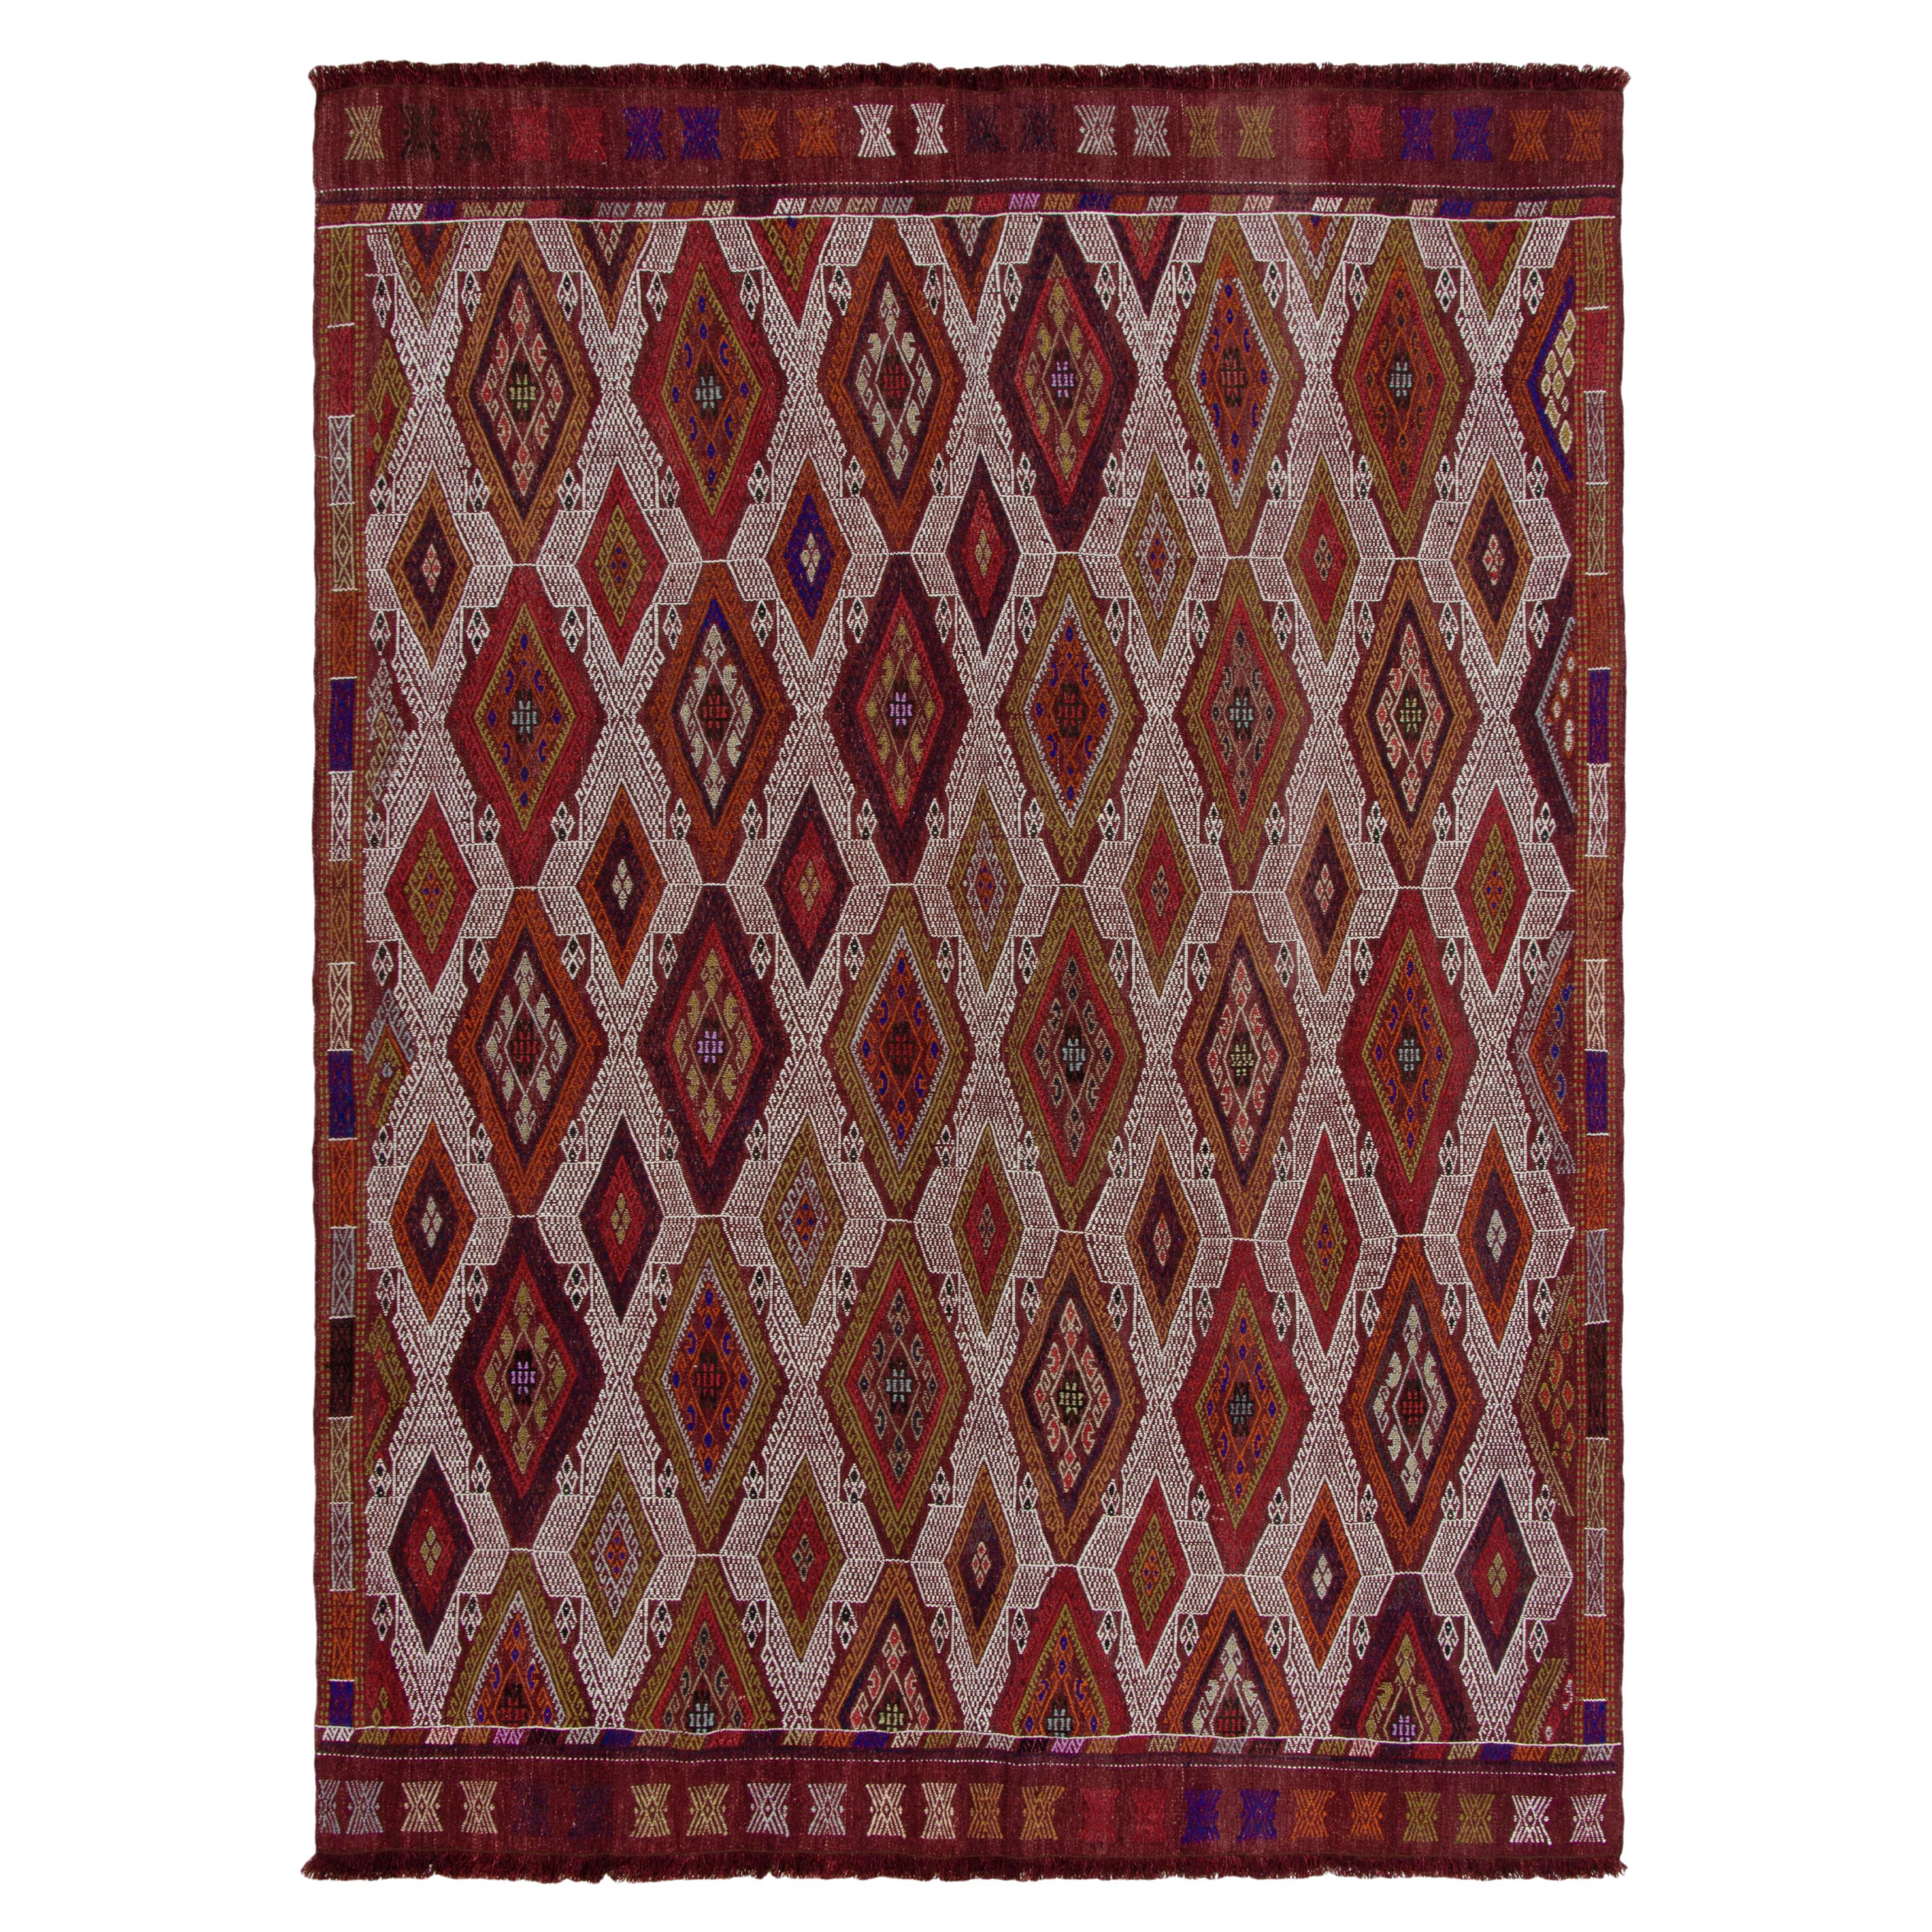 Bestickter Vintage-Kelim-Teppich in Rot, Braun und Orange mit Stammesmuster von Teppich & Kelim